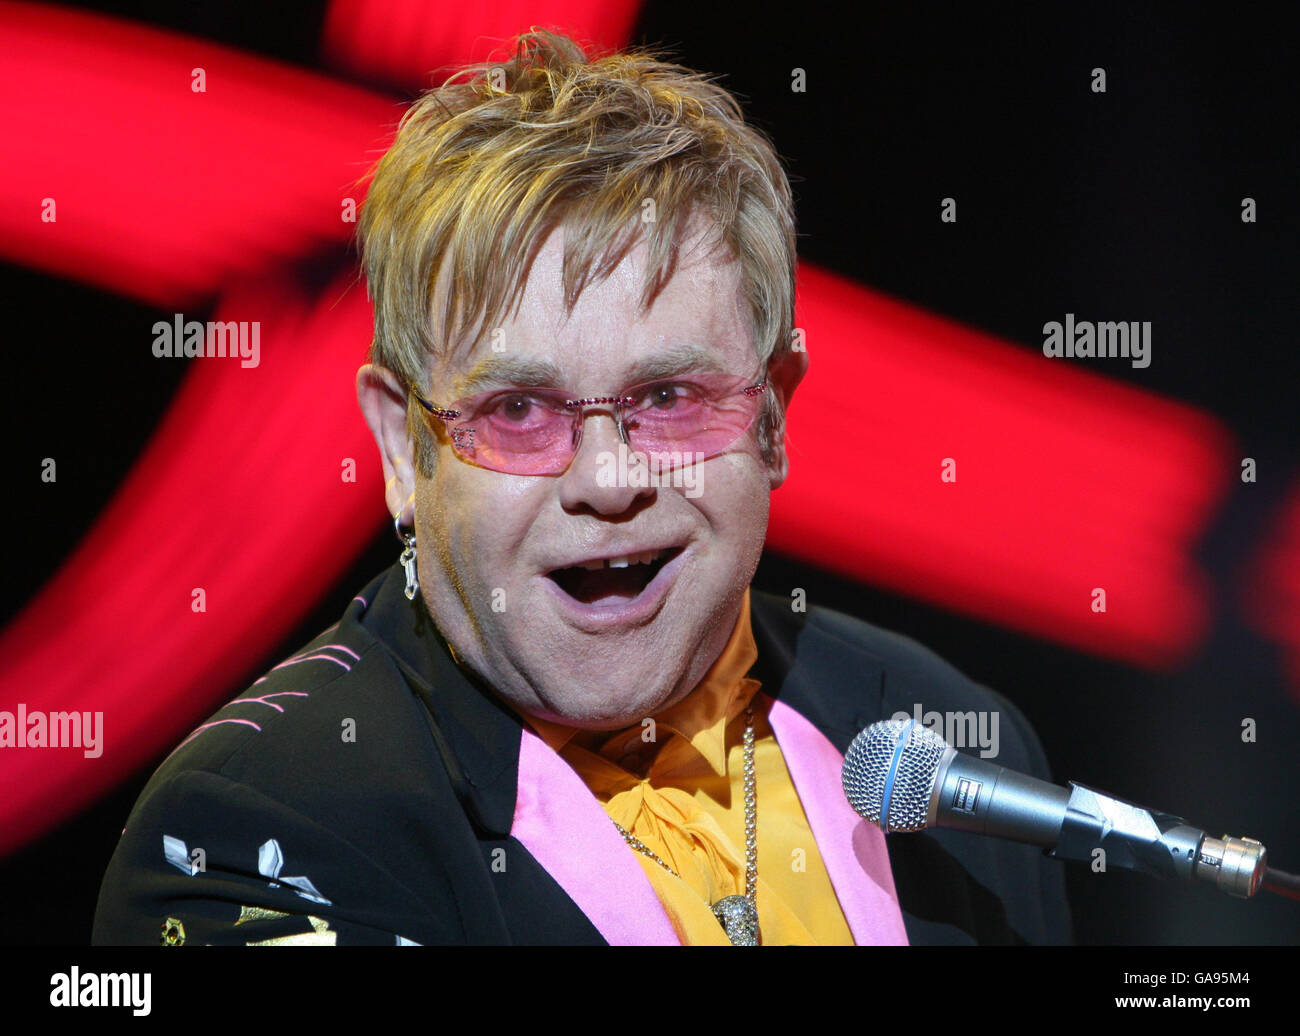 Elton John Red Piano Tour - London. Elton John performing his Red Piano tour at the O2 Arena, London. Stock Photo